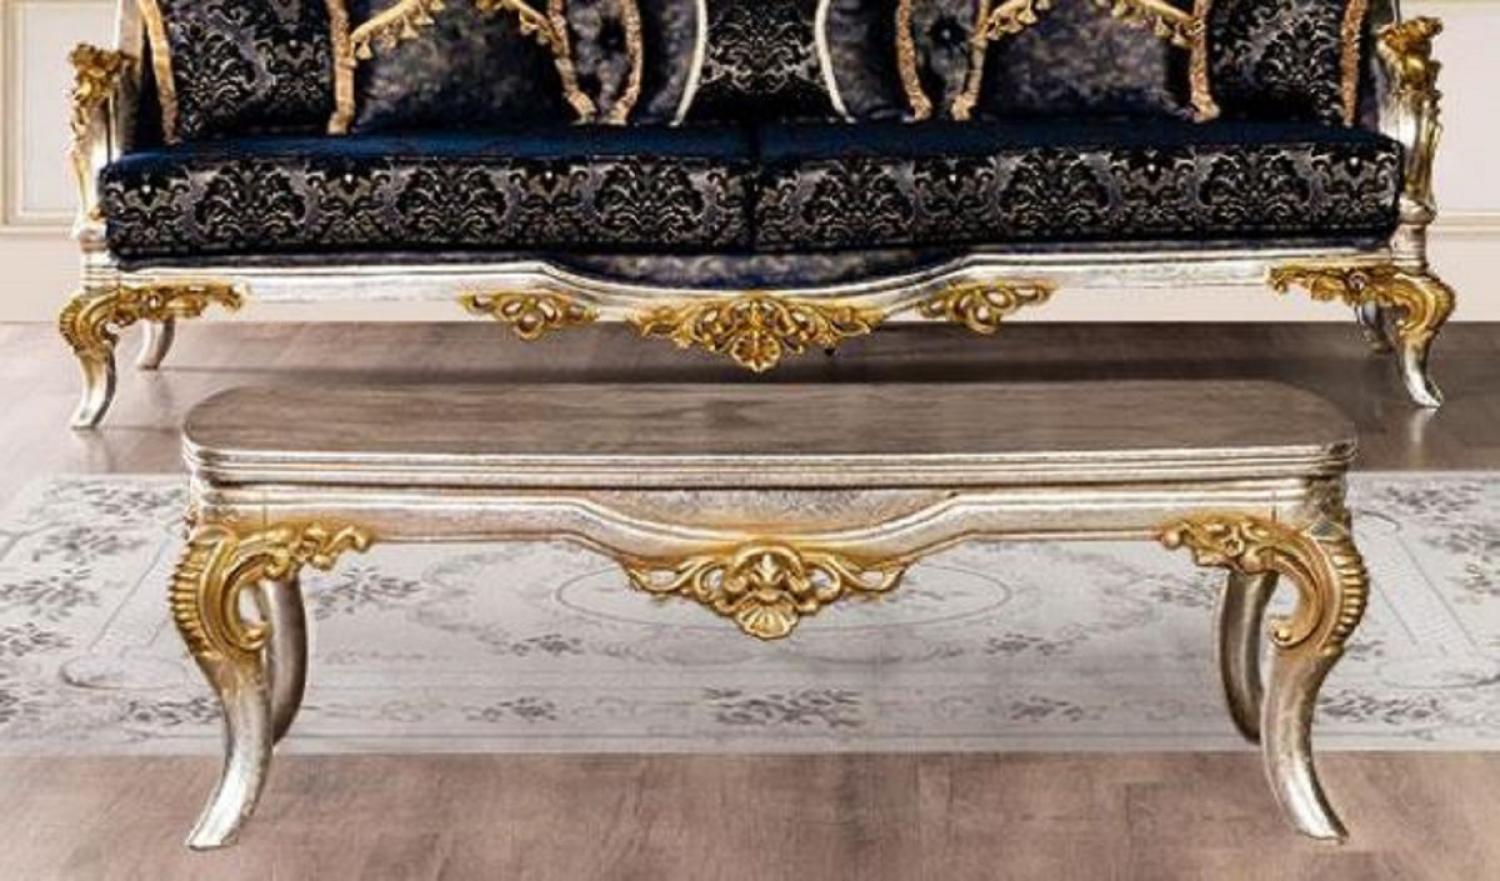 Casa Padrino Luxus Barock Couchtisch Silber / Gold - Massivholz Wohnzimmertisch im Barockstil - Barock Wohnzimmer Möbel - Edel & Prunkvoll Bild 1